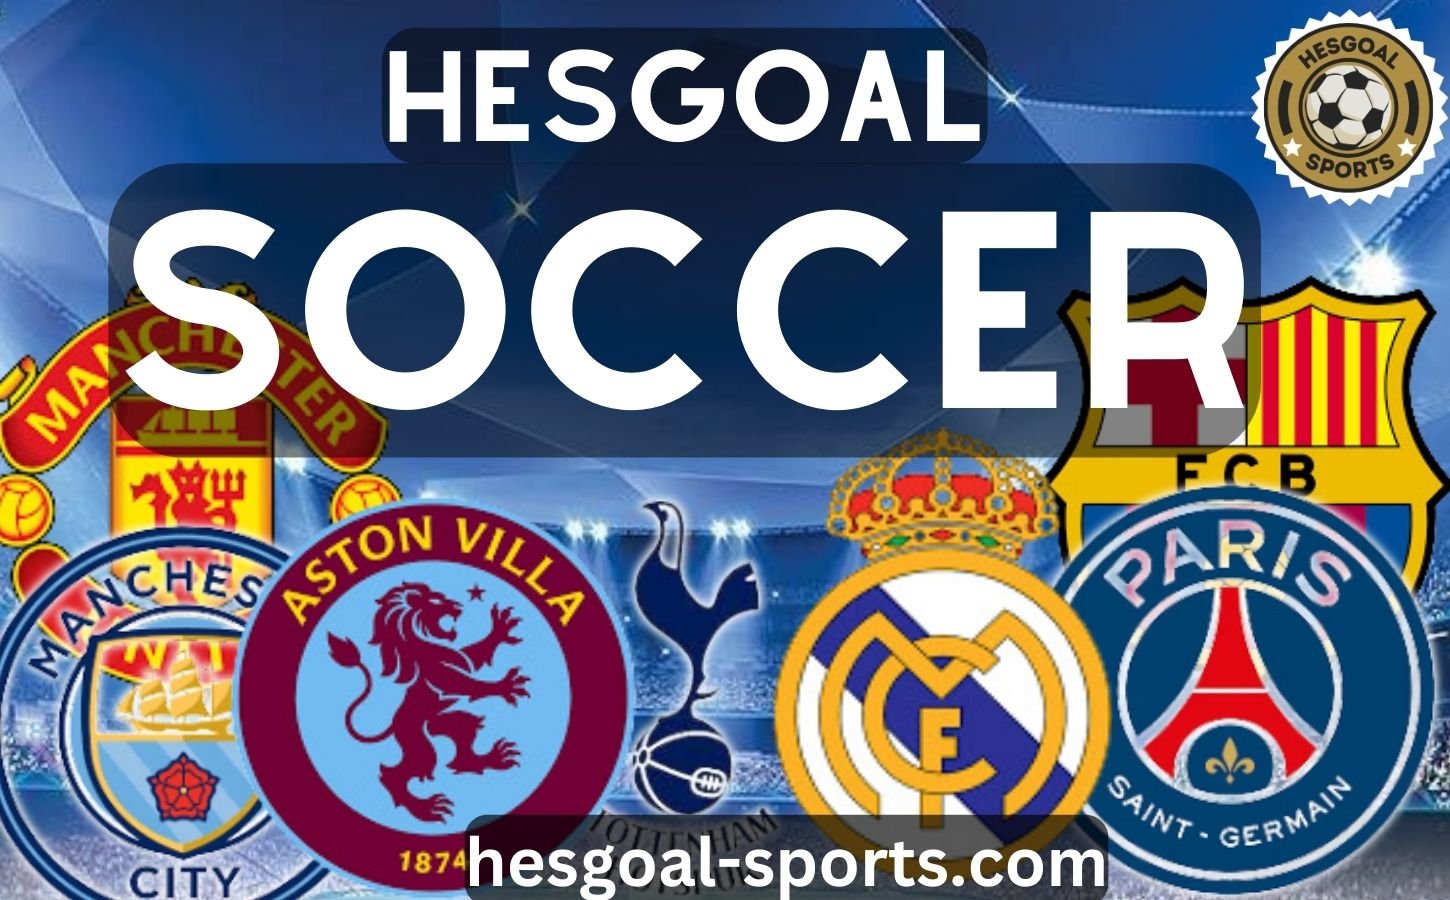 hesgoal soccer